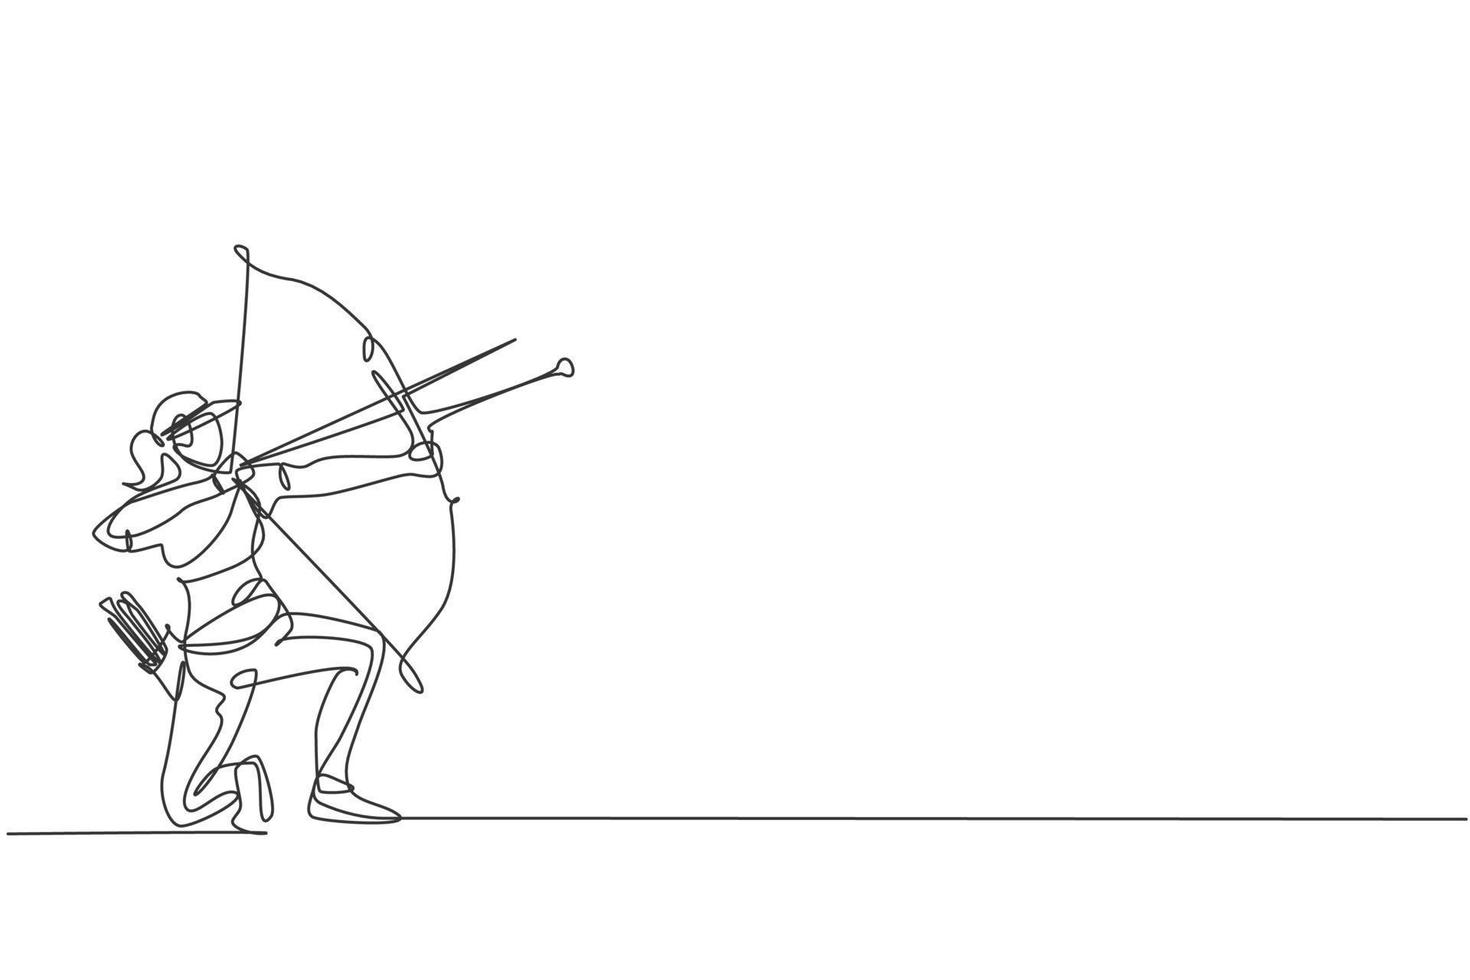 único desenho de linha contínua de foco de jovem arqueiro profissional visando o alvo de tiro com arco. exercício de esporte de tiro com arco com o conceito de arco. gráfico de ilustração vetorial de design de desenho de uma linha na moda vetor